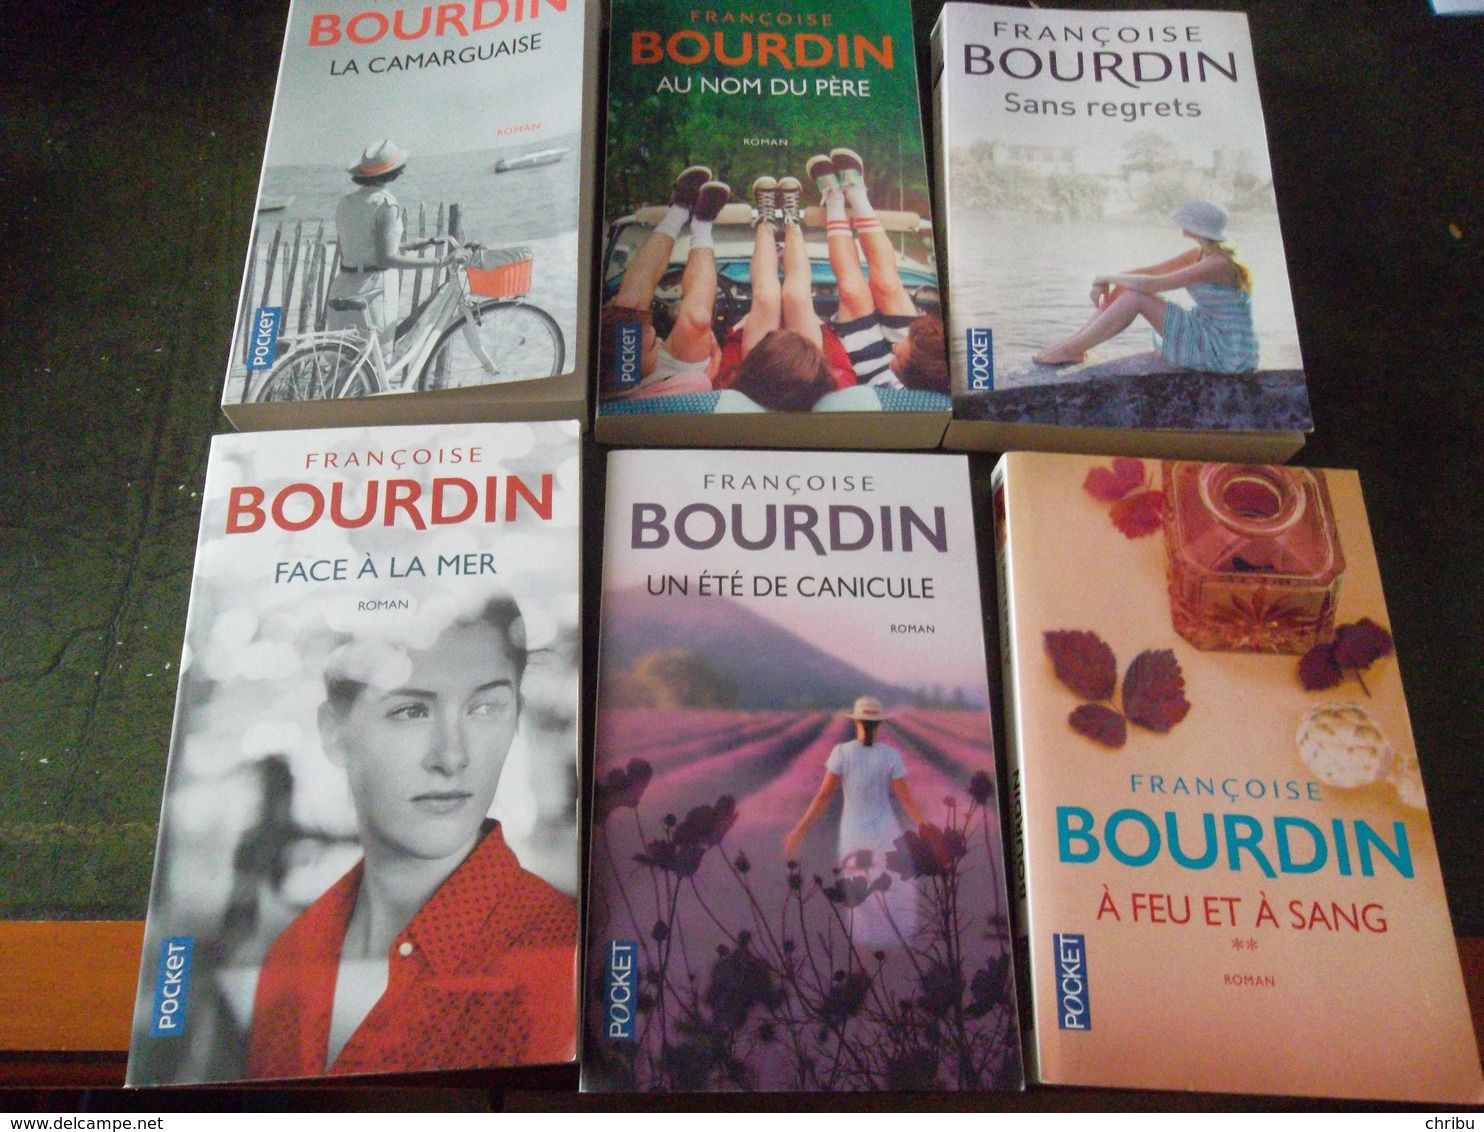 Bourdin